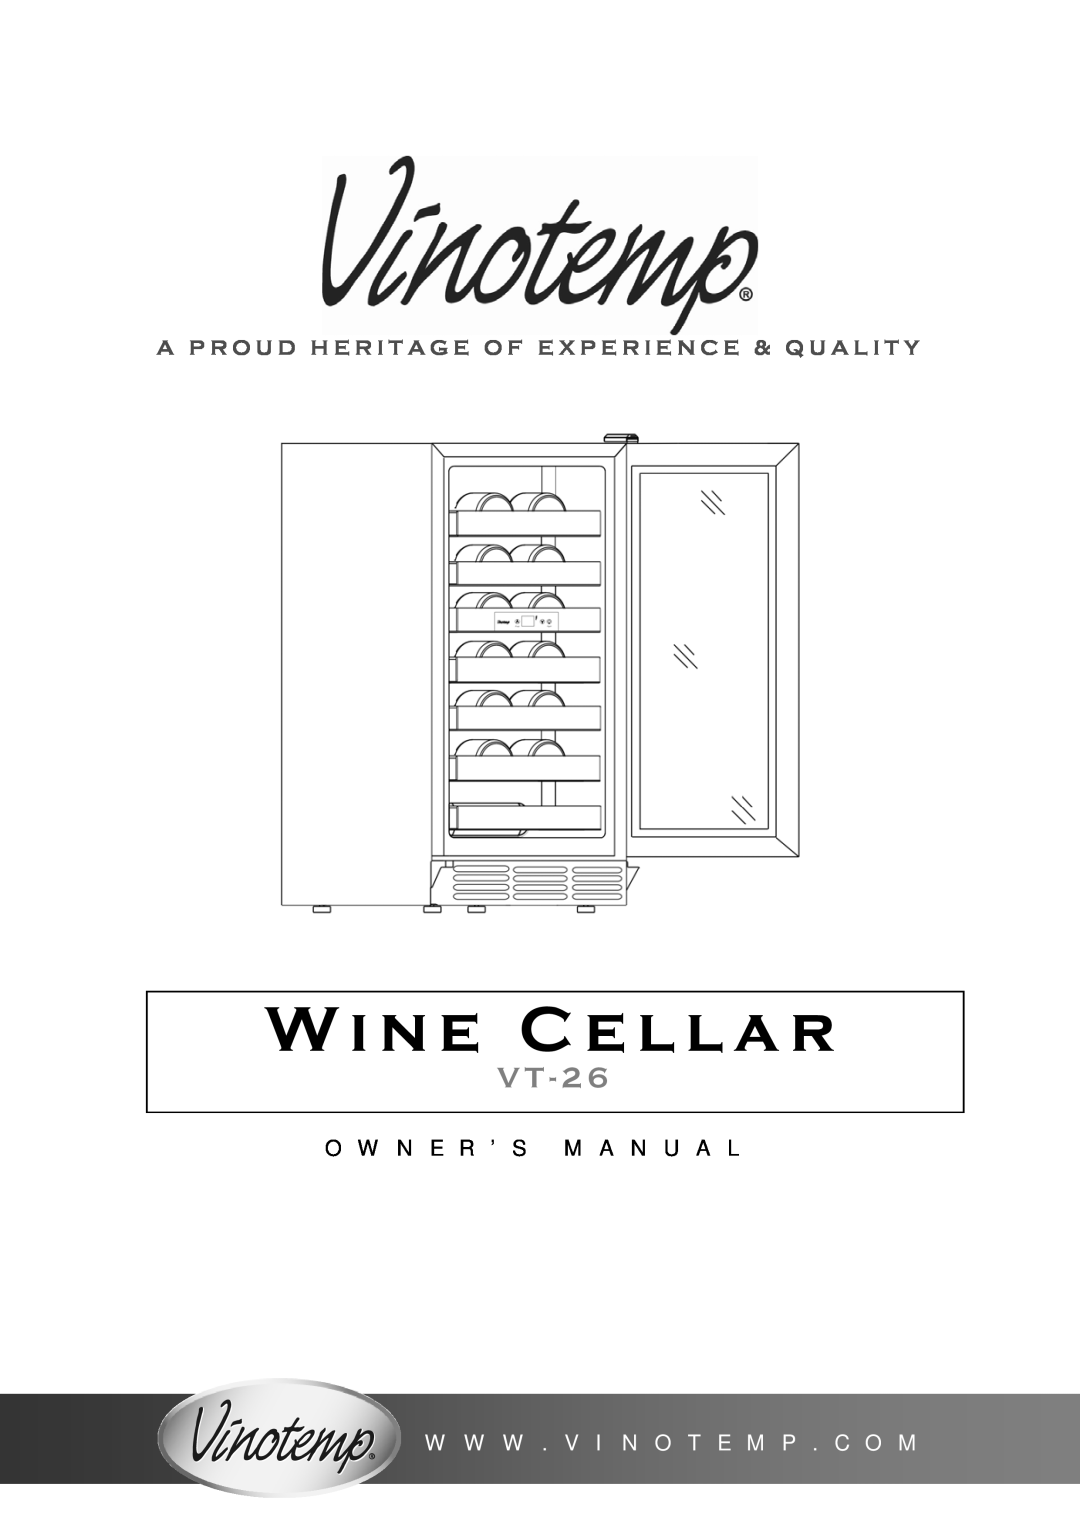 Vinotemp VT-26 owner manual Wine Cellar, V T - 2, O W N E R ’ S M A N U A L, W W W . V I N O T E M P . C O M 